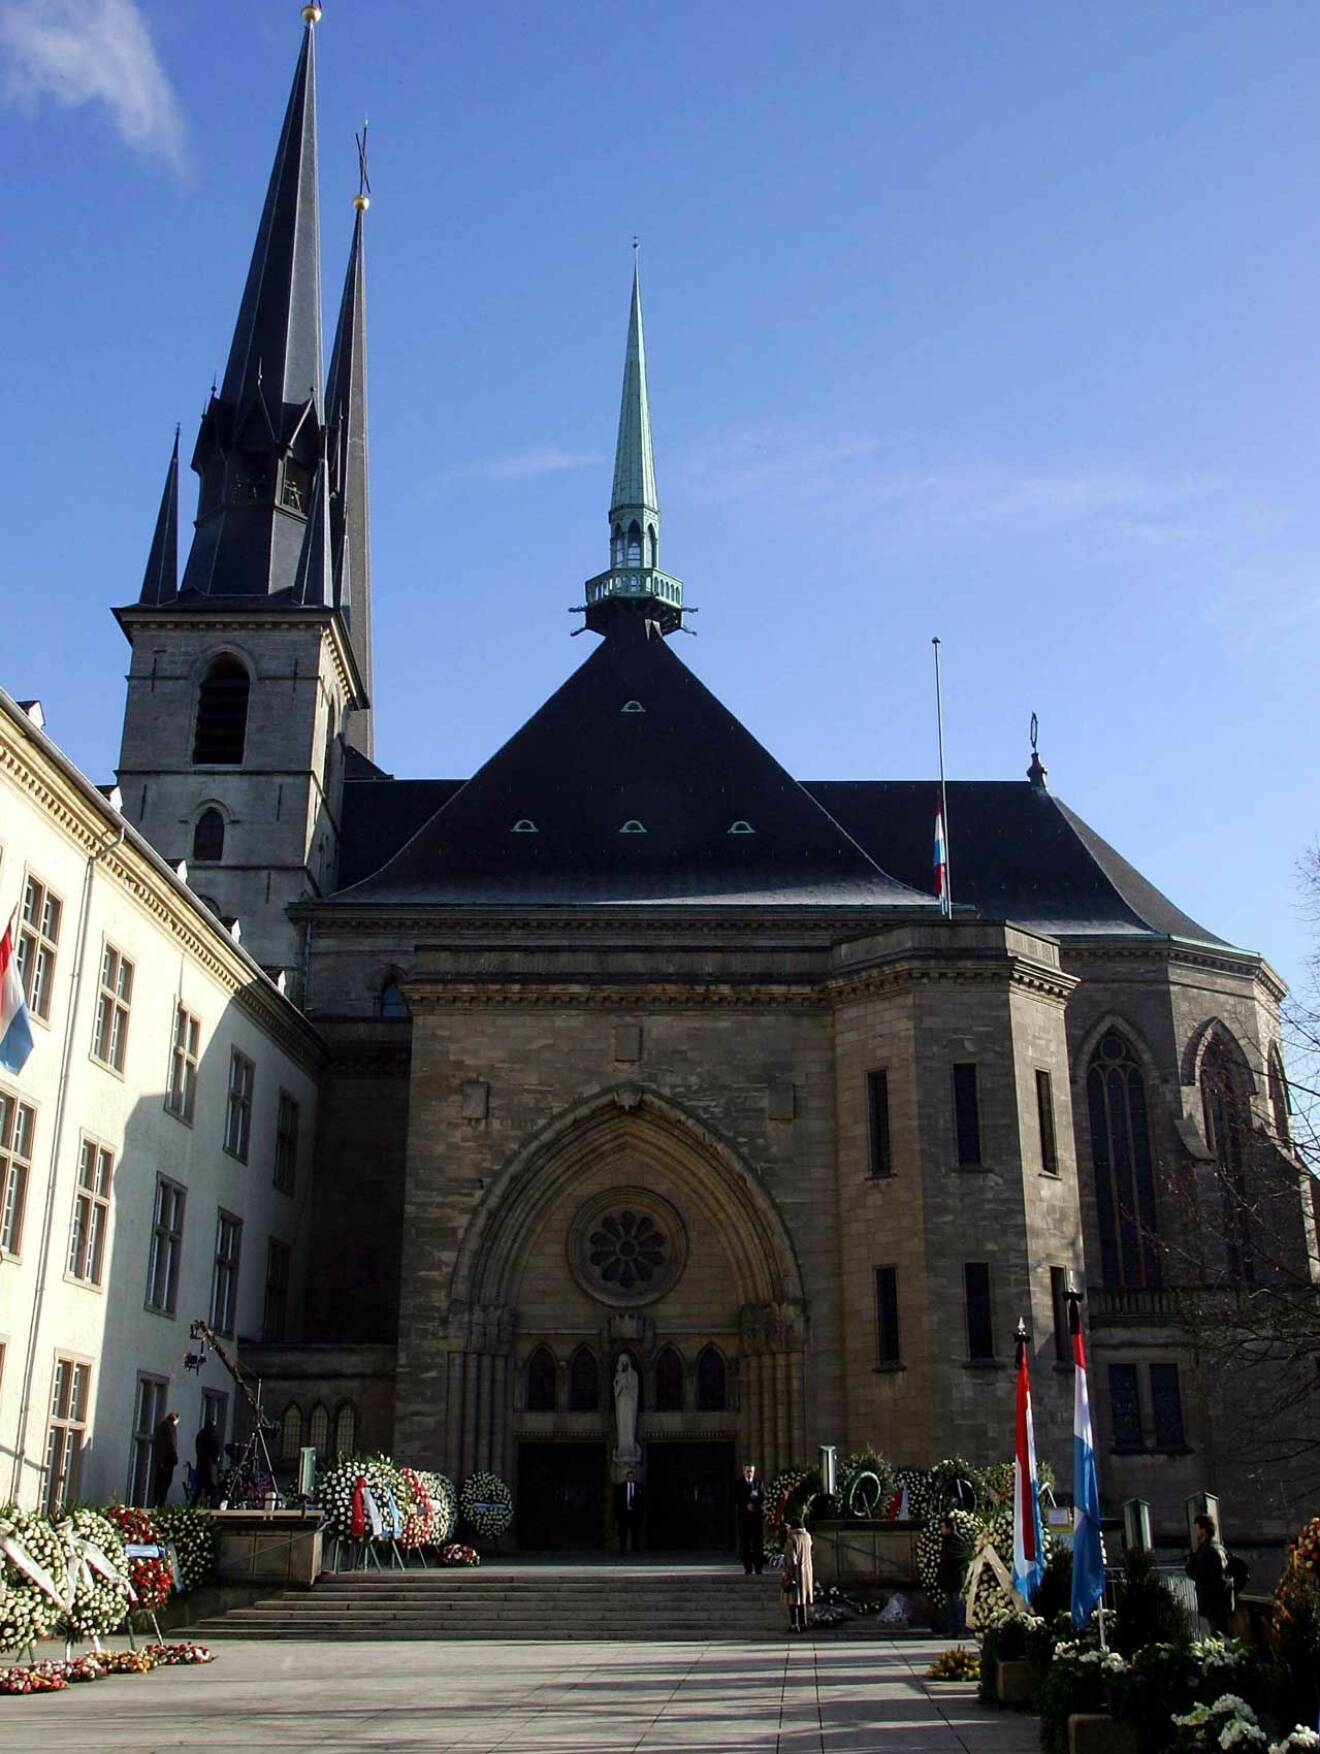 Det blir en statsbegravning i Luxemburgs stora katedral, med medlemmar från Europas alla kungahus på plats i kyrkbänkarna.